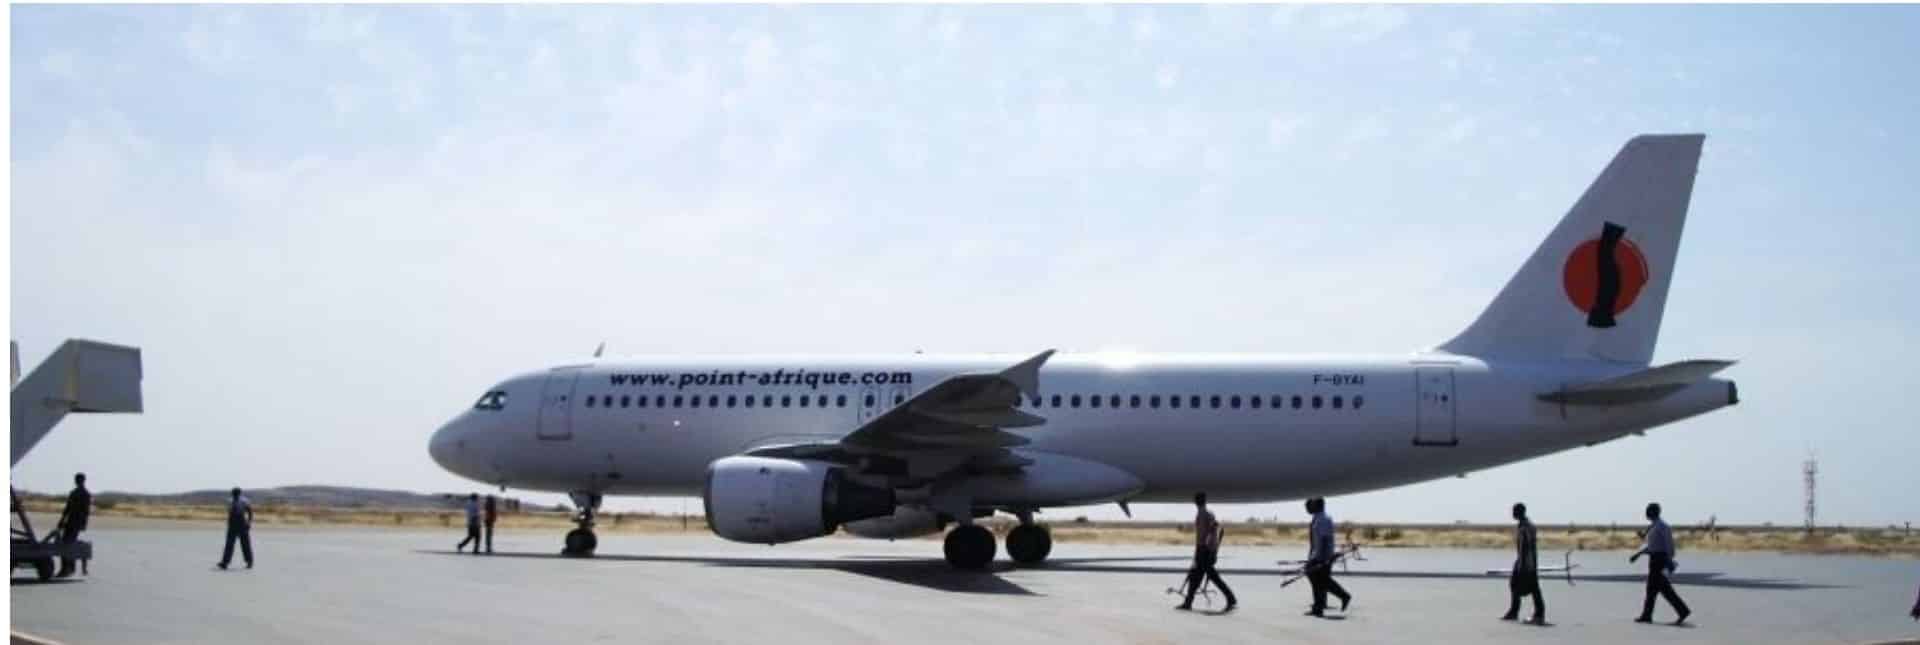 Avion Point-Afrique - vol charter en Mauritanie